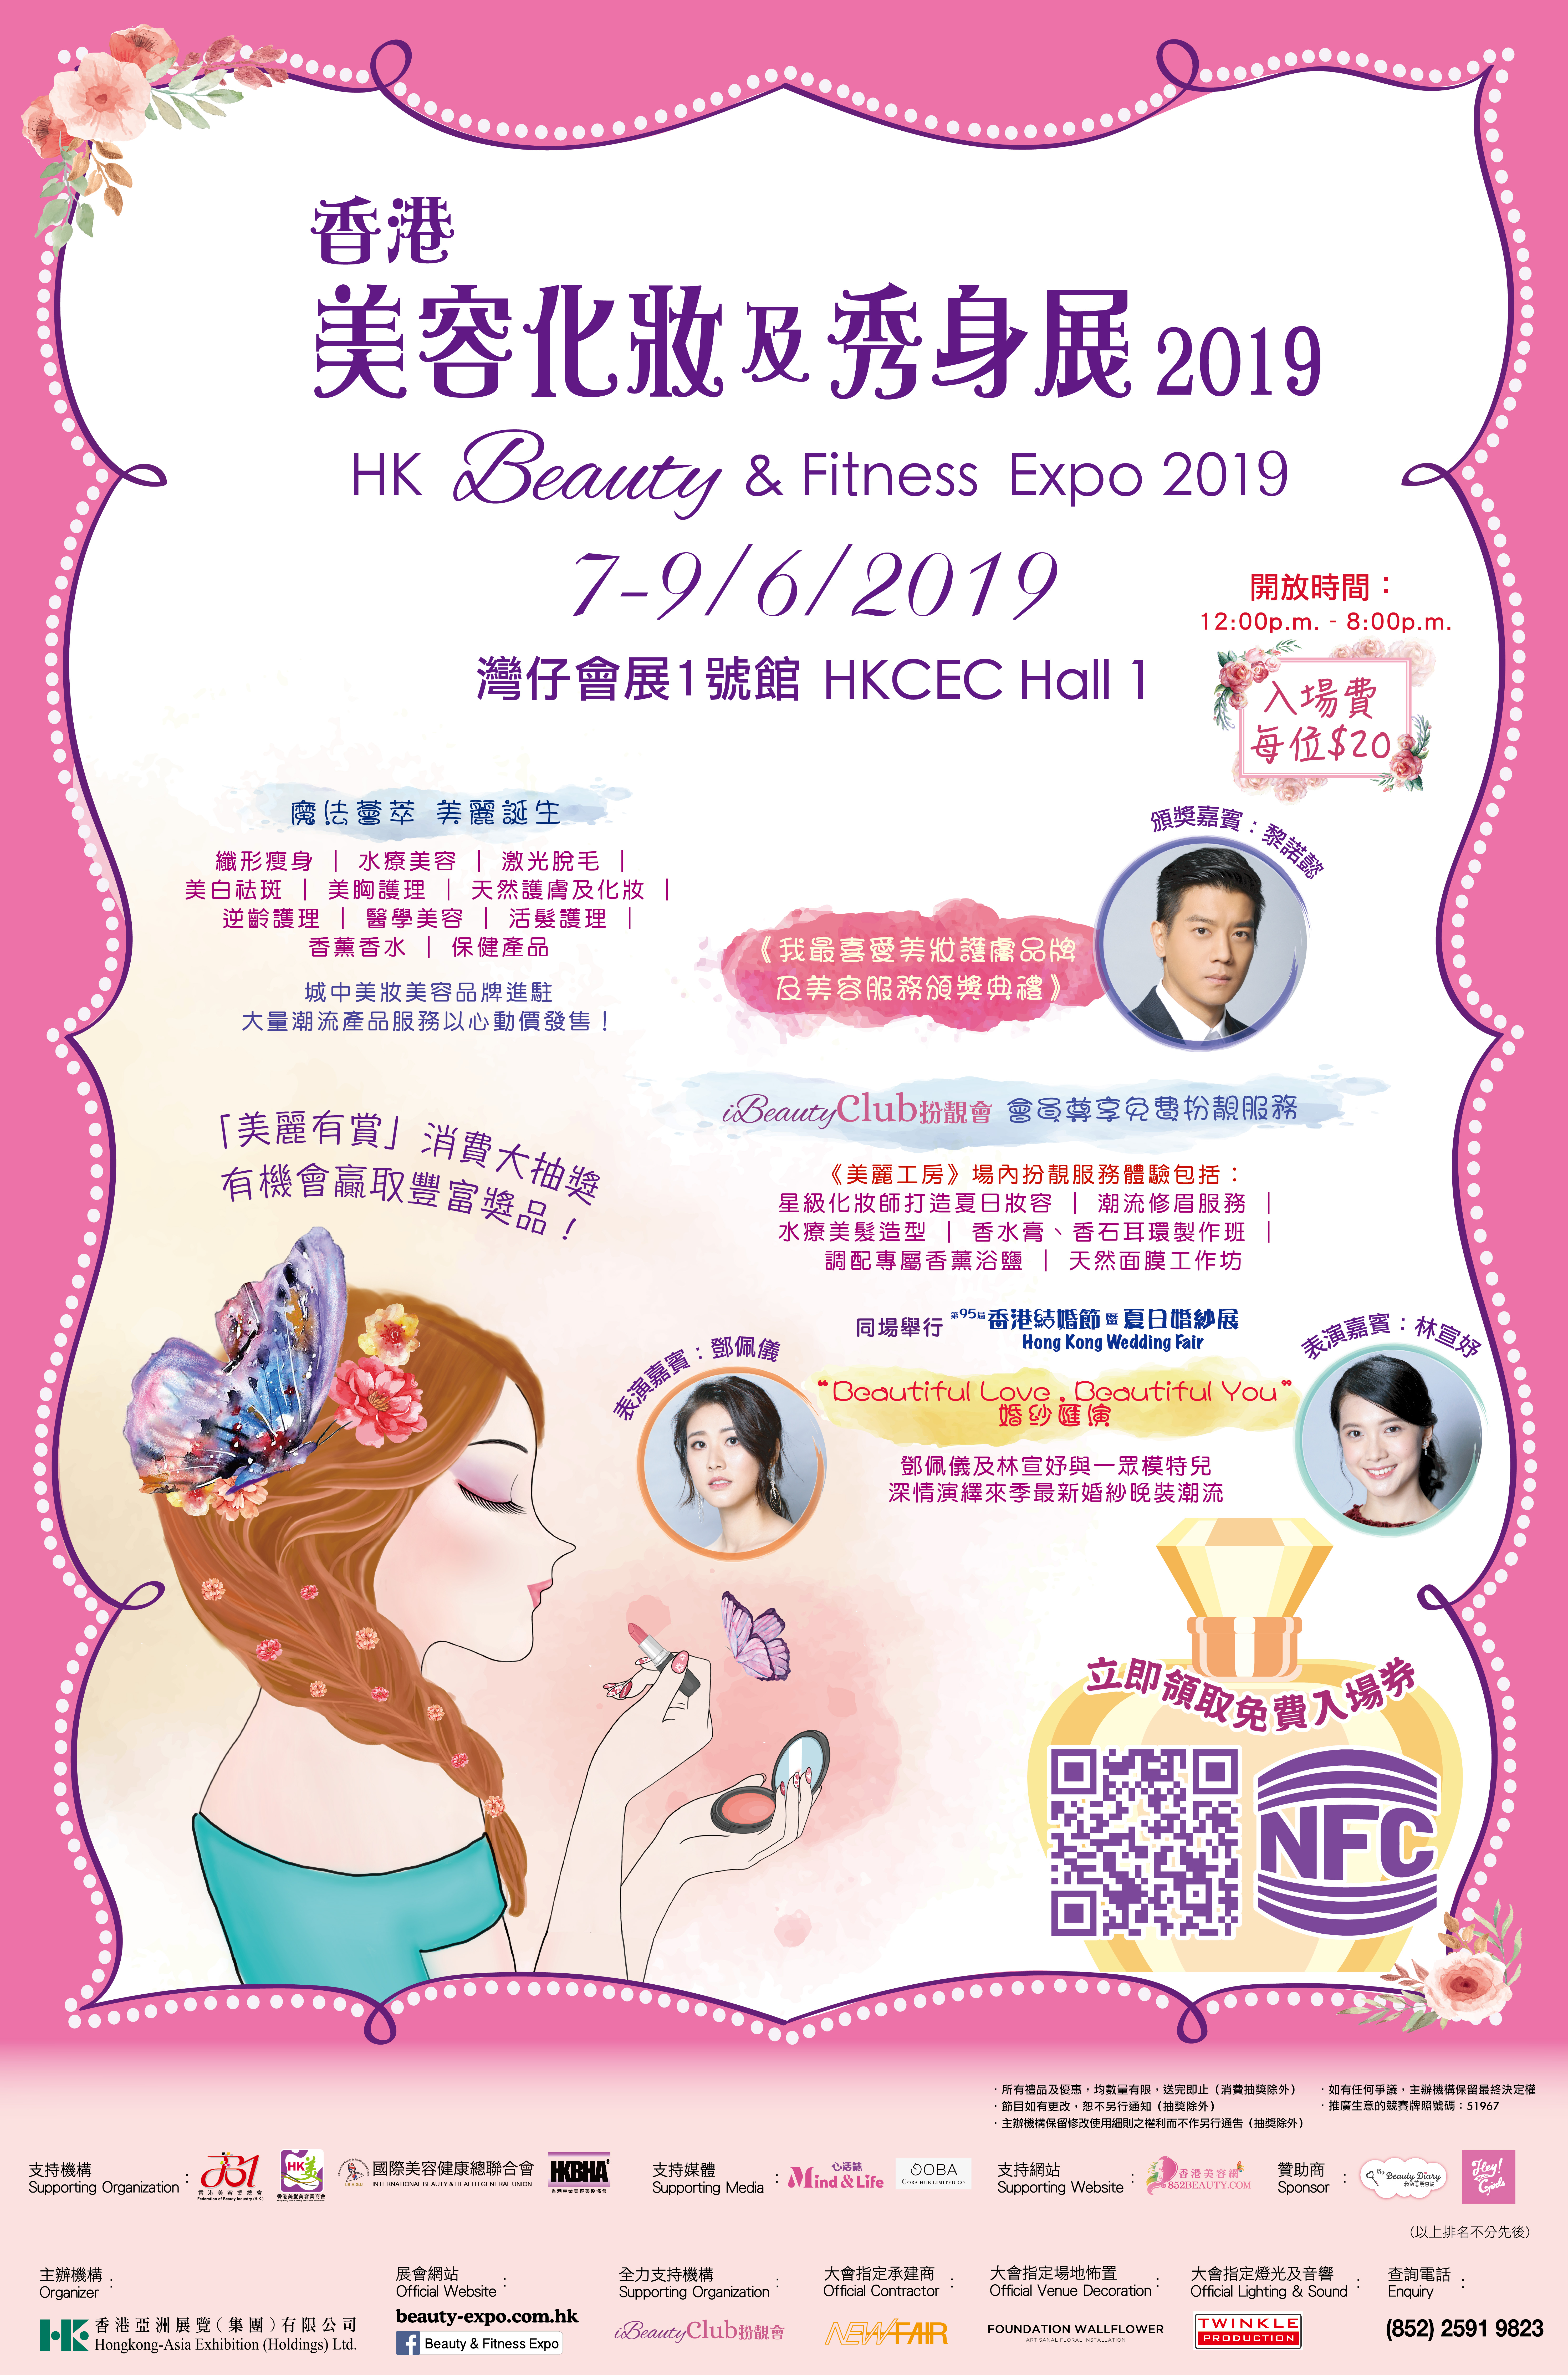 香港美容網 Hong Kong Beauty Salon 最新美容資訊: 美容化妝及秀身展 2019 x 香港美容網 852beauty 